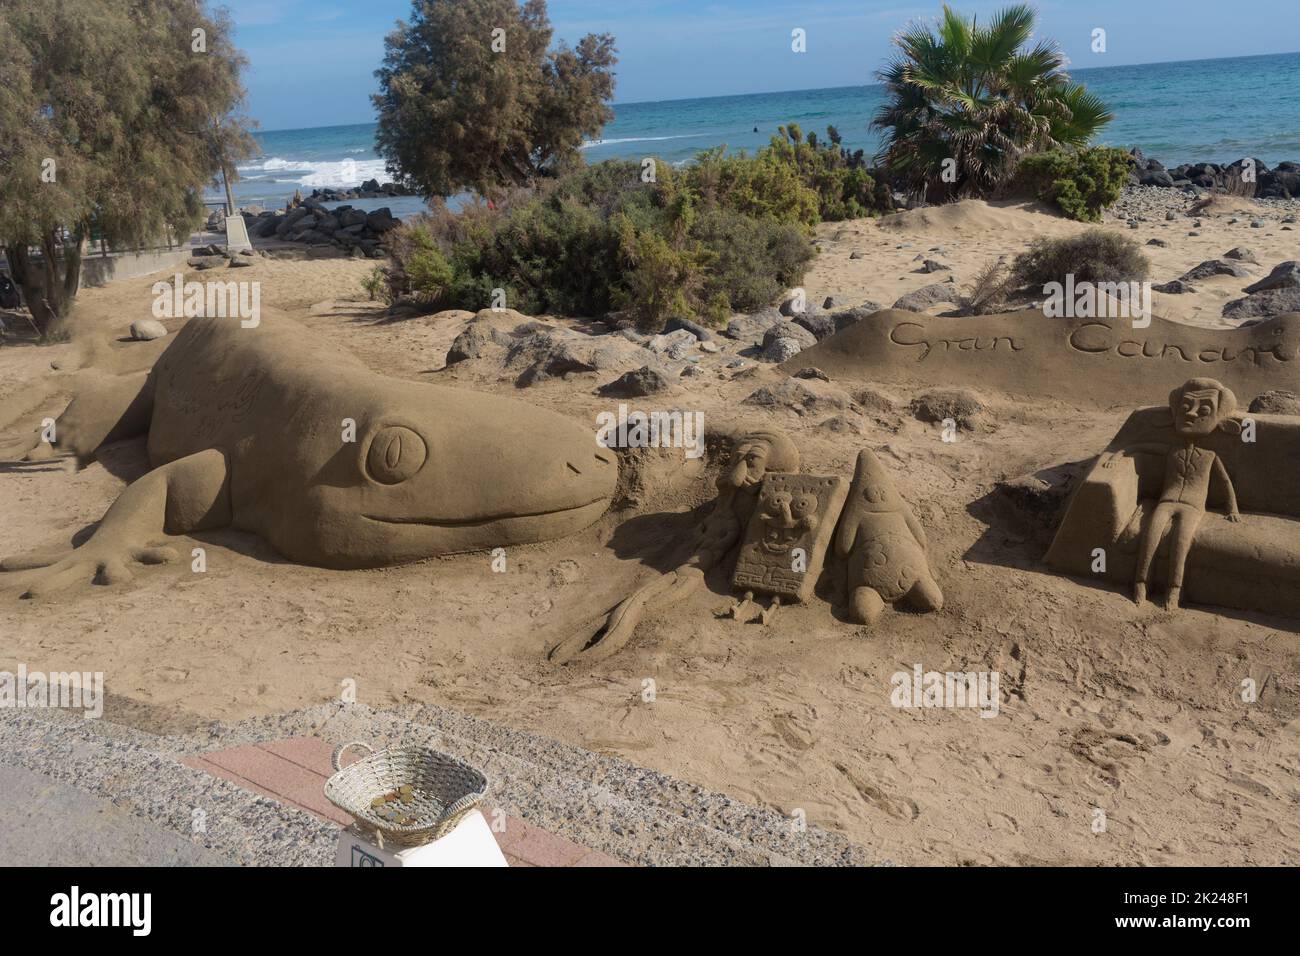 CRAN CANARIA, MELONERAS - 13. NOVEMBRE 2019: Sculture di sabbia sulla spiaggia di Meloneras, Spagna con iscrizione Gran Canaria Foto Stock